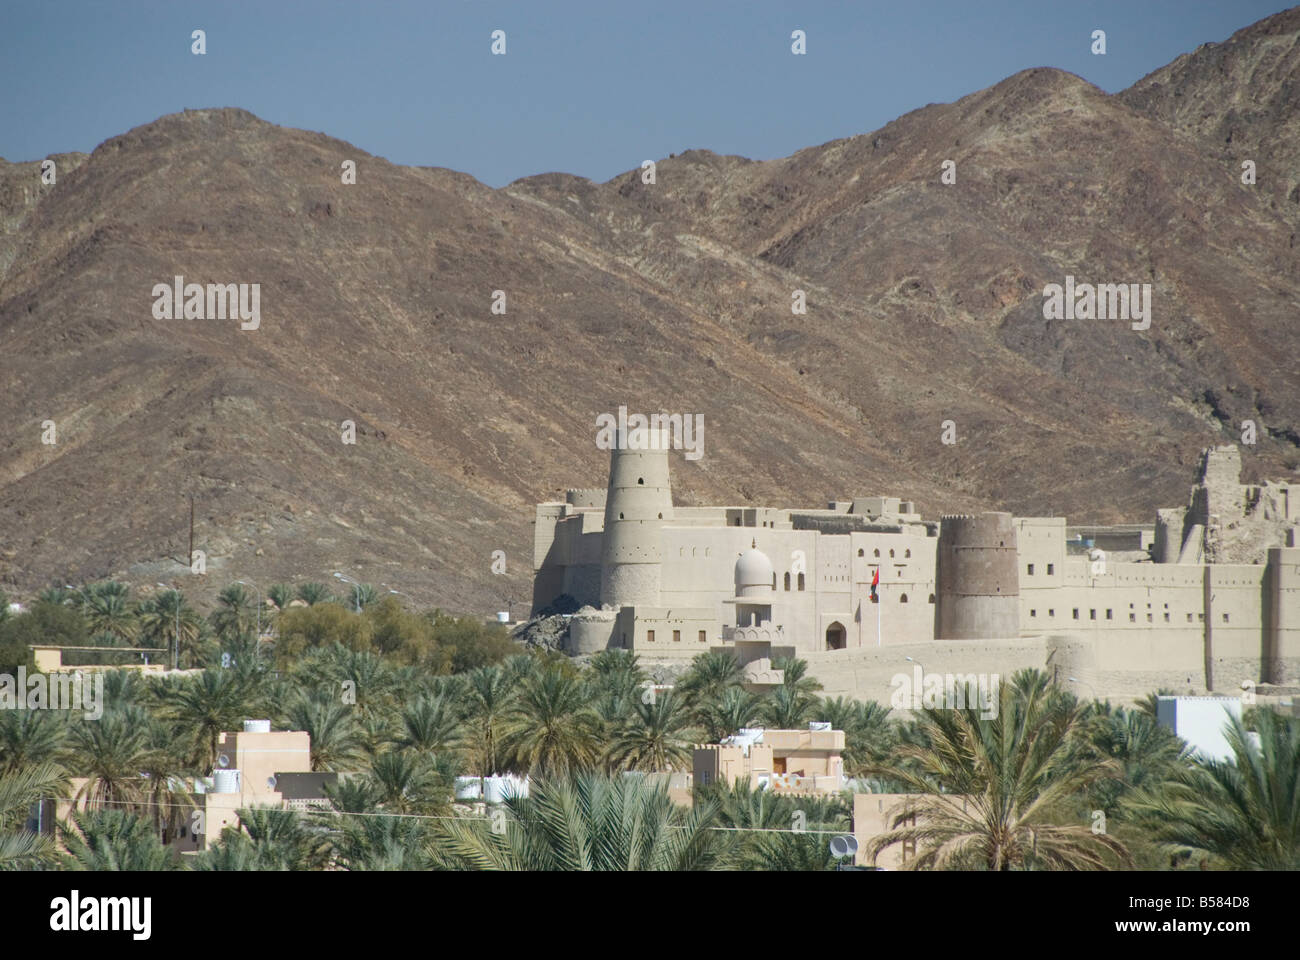 Fort en palmery sur le bord de l'oasis de Bahla, ville moderne, Oman, Middle East Banque D'Images